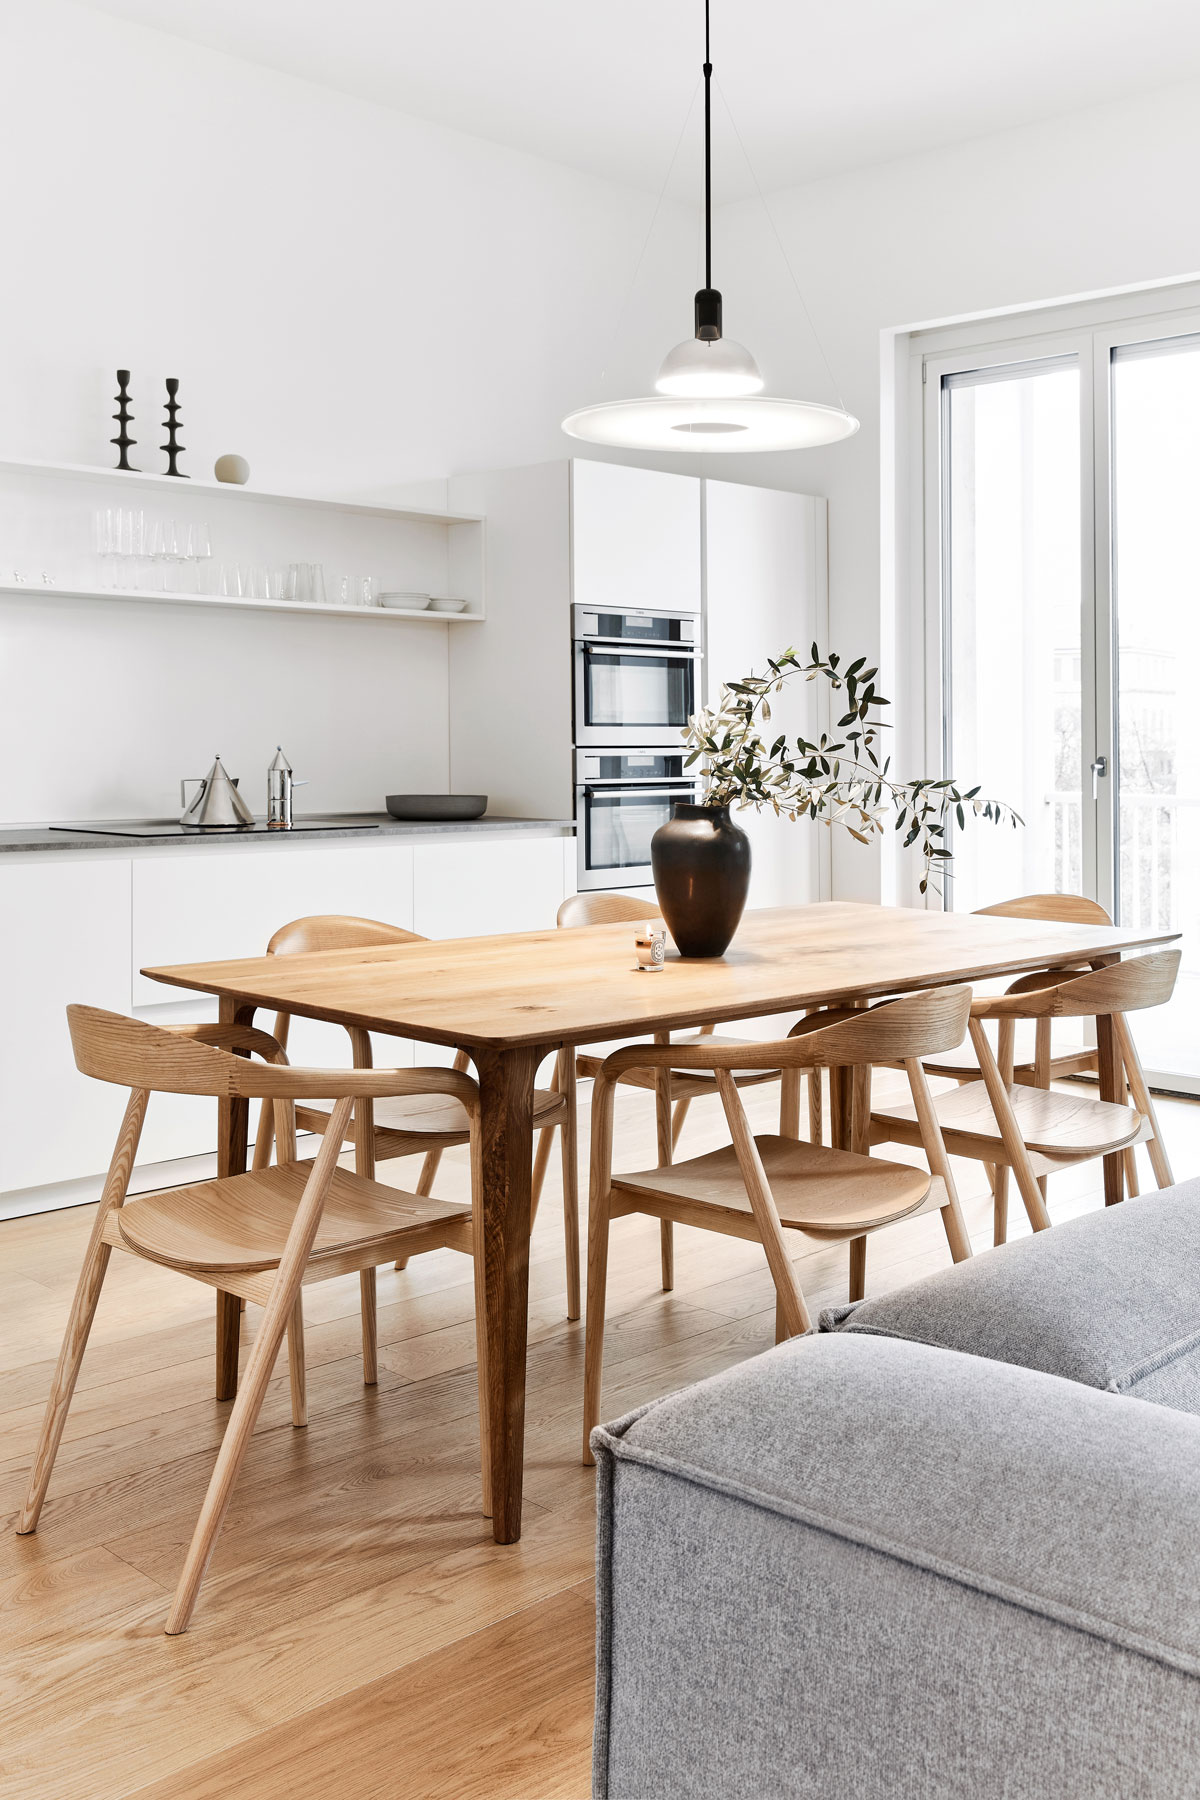 Biela kuchynská linka s uzavretým spodkom a otvorenými vrchnými policami, drevený jedálenský stôl v otvorenom koncepte s obývačkou